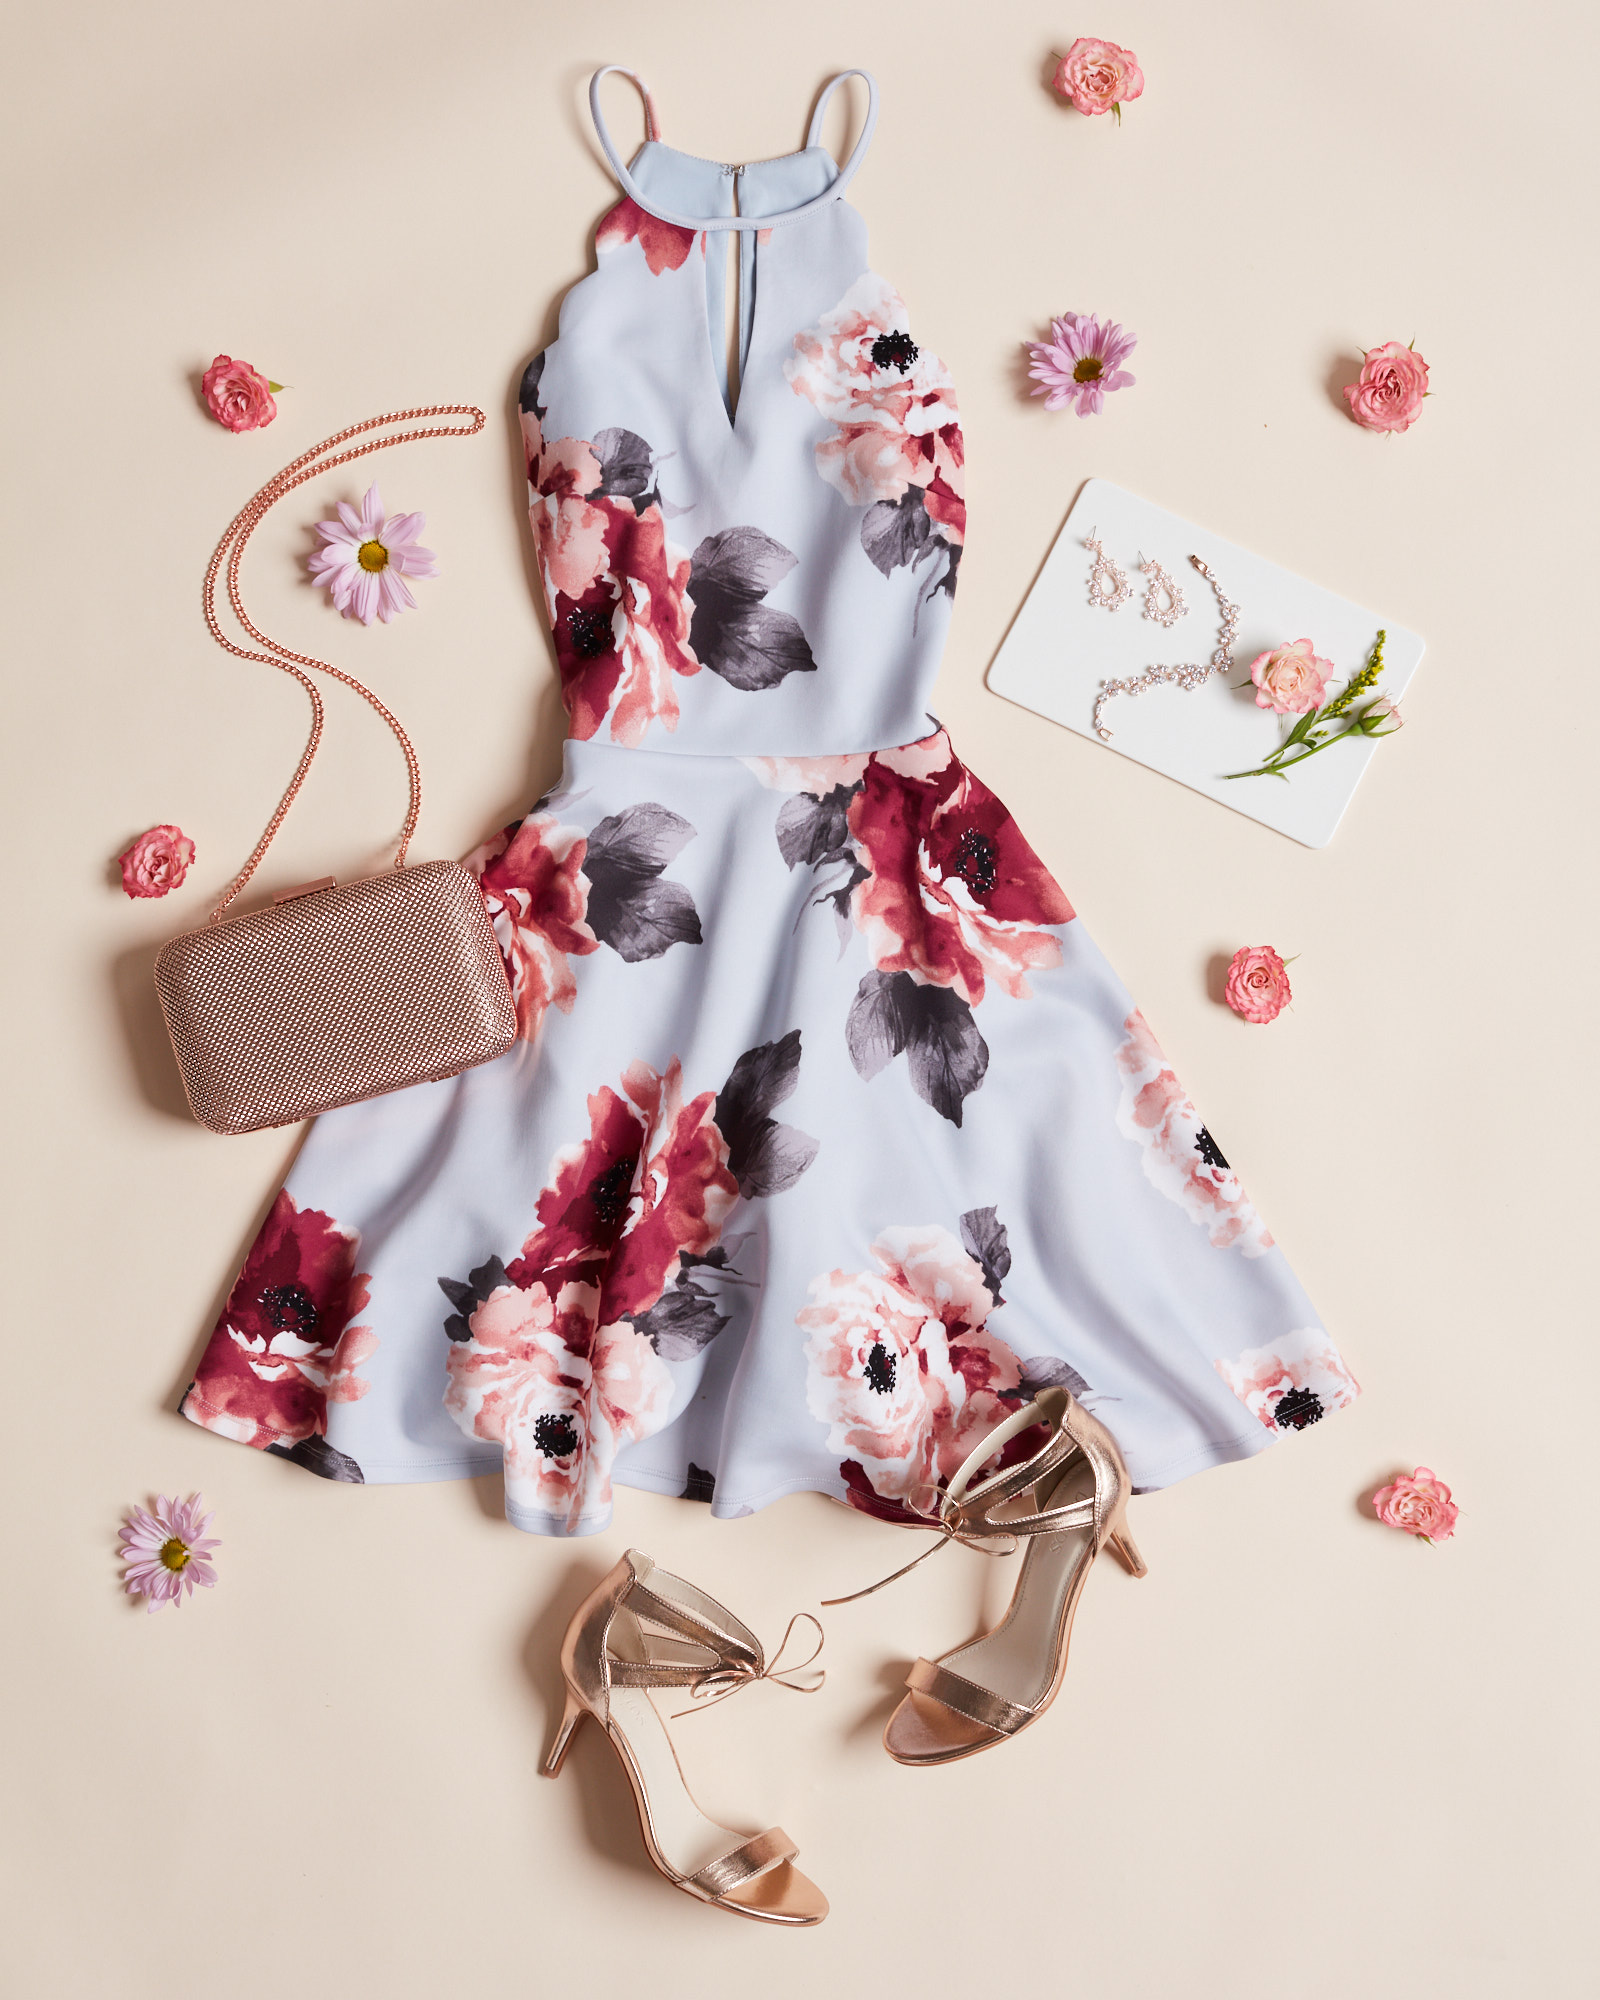 Short floral print halter dress for Spring wedding guests